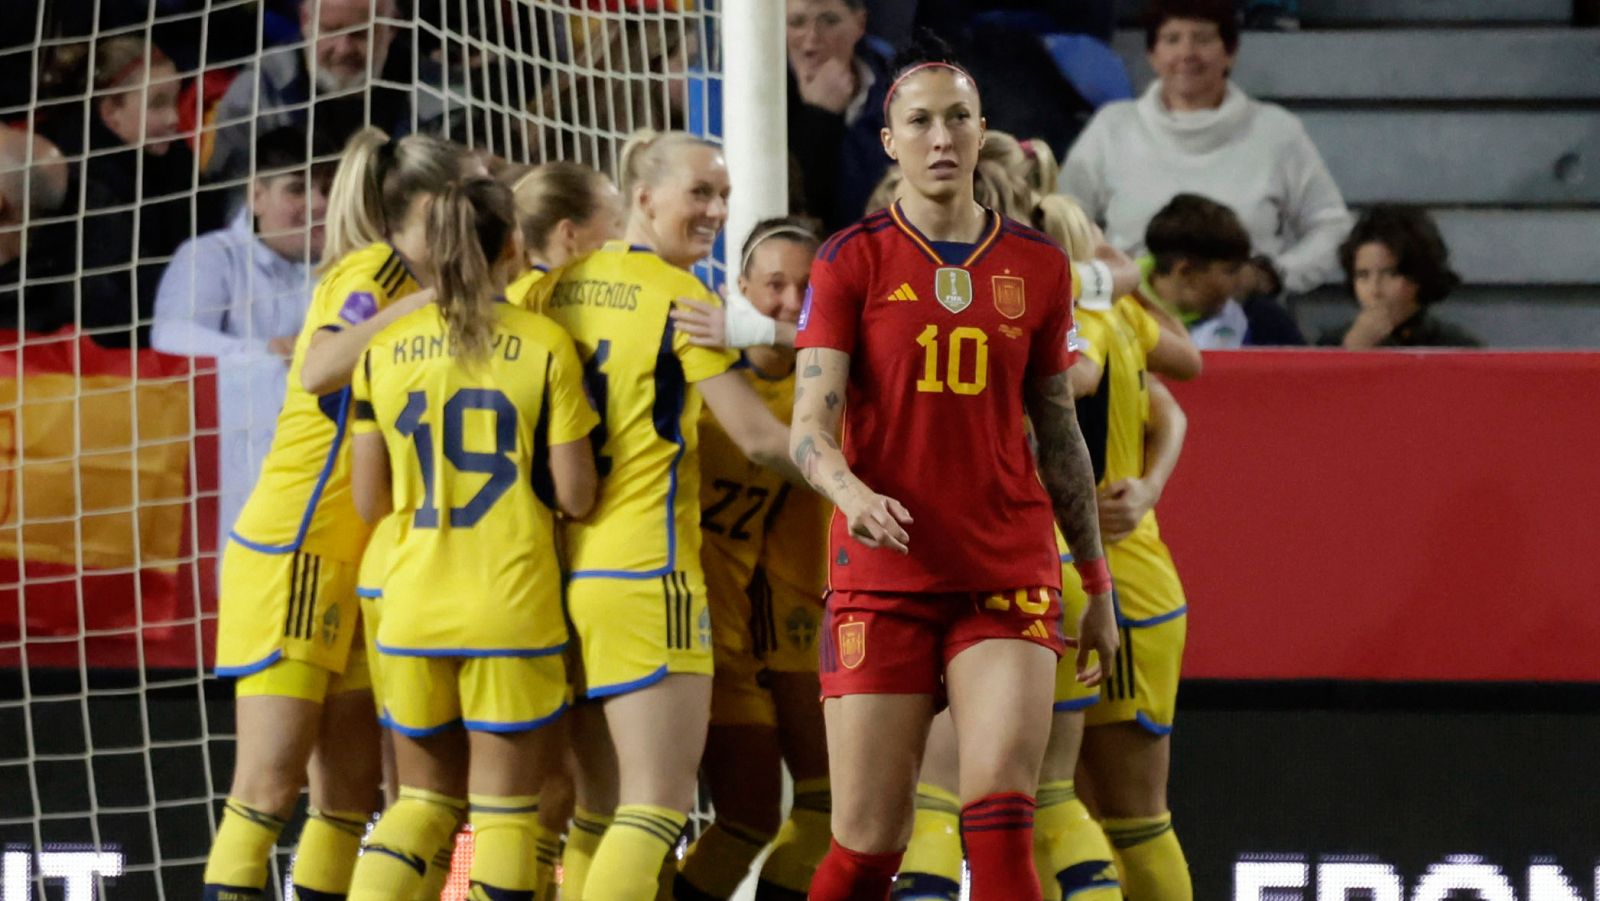 España 0 - 1 Suecia | Zigiotti Olme hace el primer gol del partido en la primera jugada - ver ahora